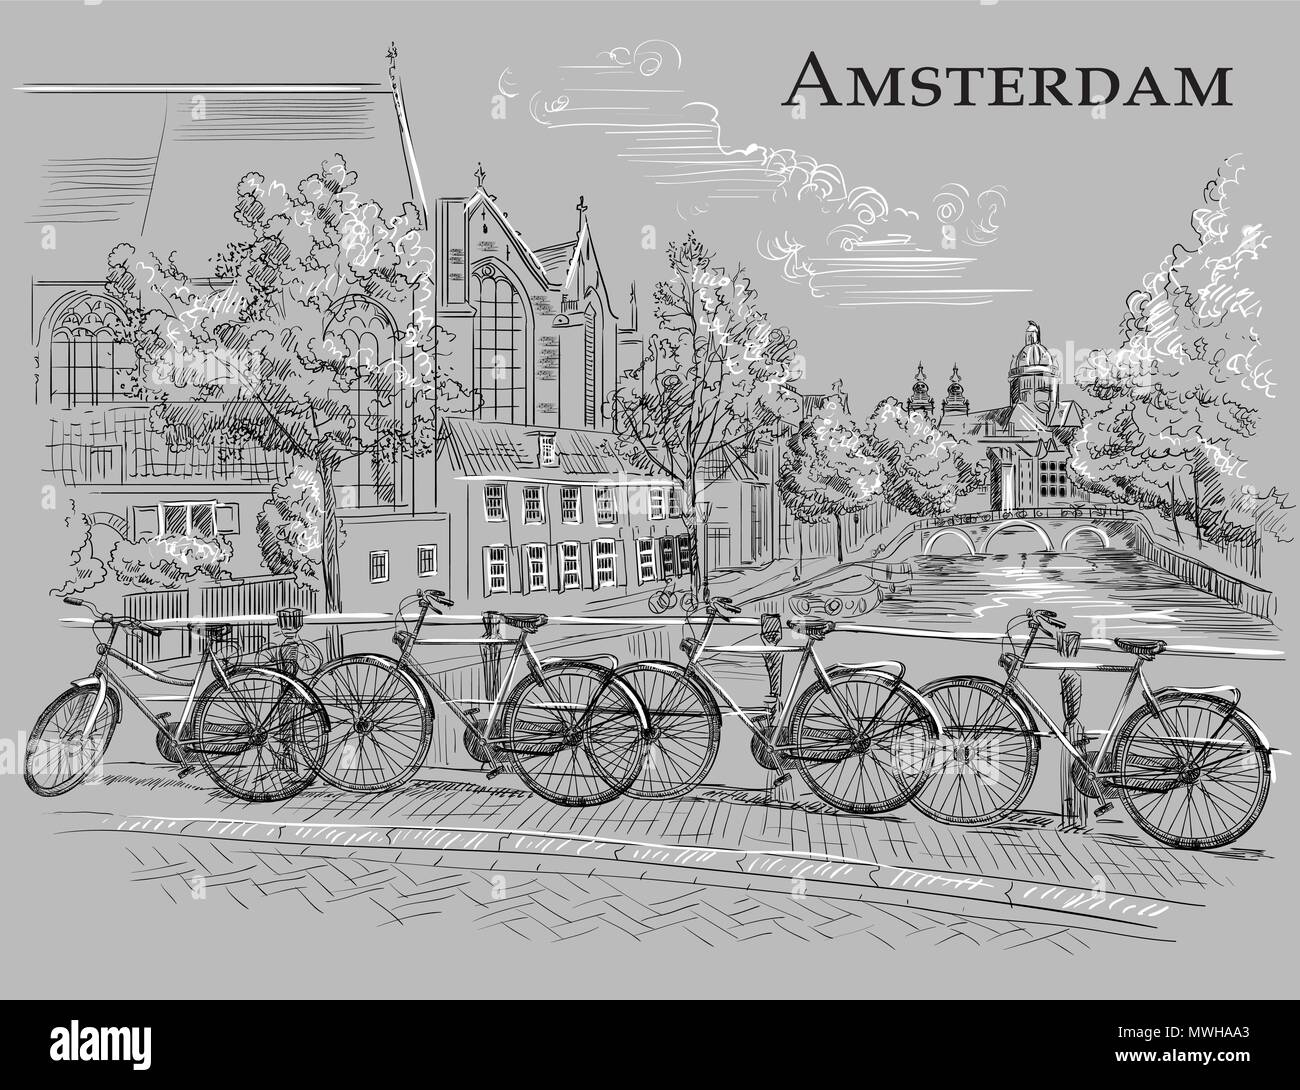 Fahrräder auf der Brücke über die Kanäle von Amsterdam, Niederlande. Wahrzeichen der Niederlande. Vektor hand Zeichnung Abbildung in schwarz und wite Farben Isola Stock Vektor